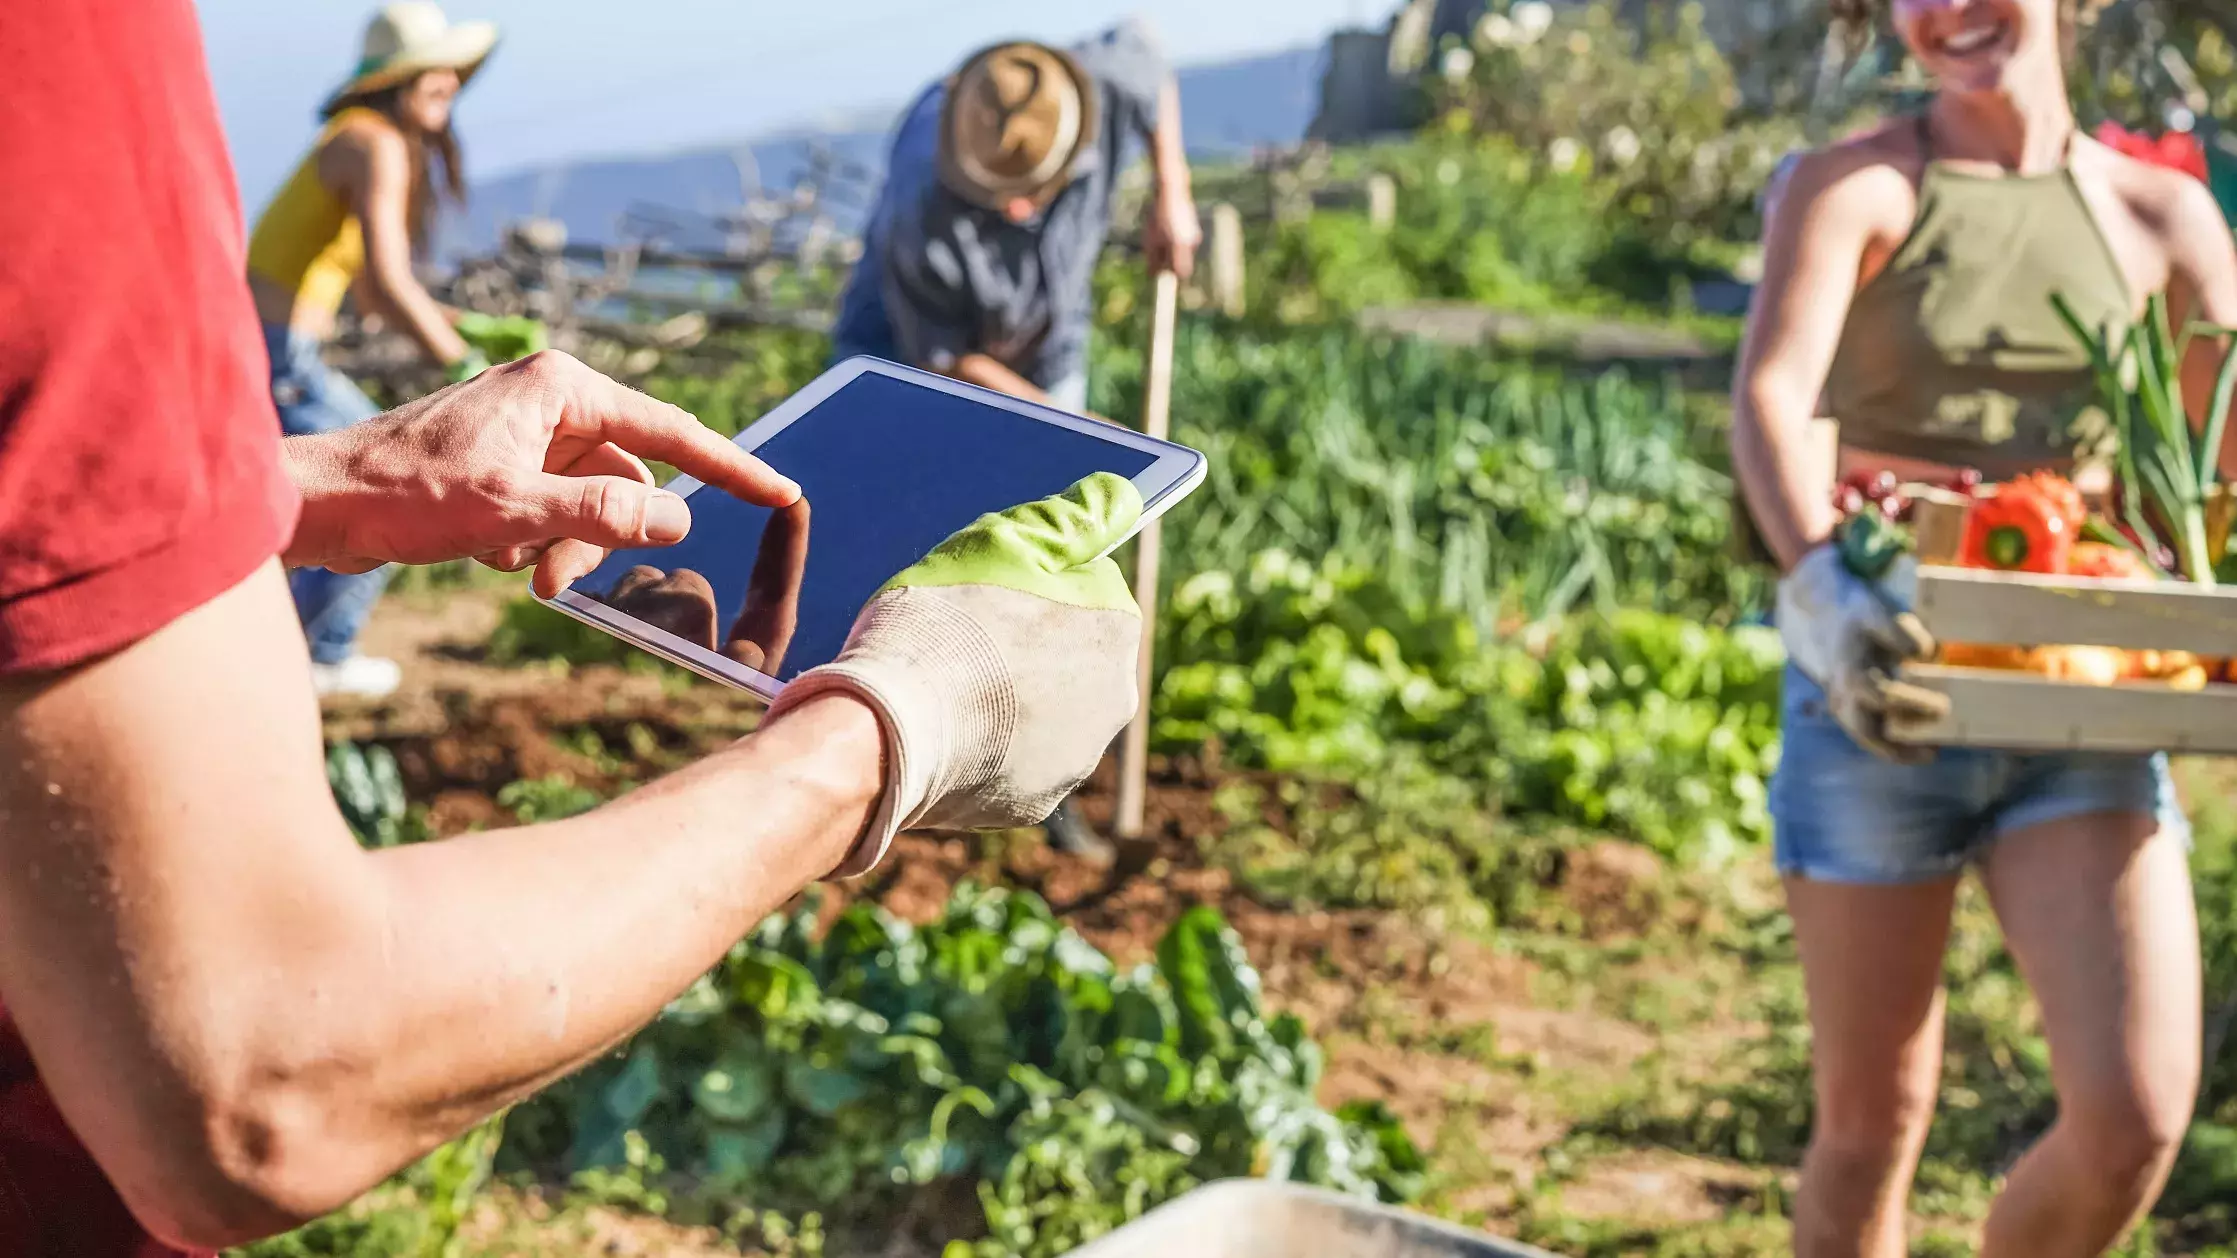 Junge Menschen ernten Gemüse auf einem Feld, Im Vordergrund tippt jemand etwas auf einem Tablet ein.